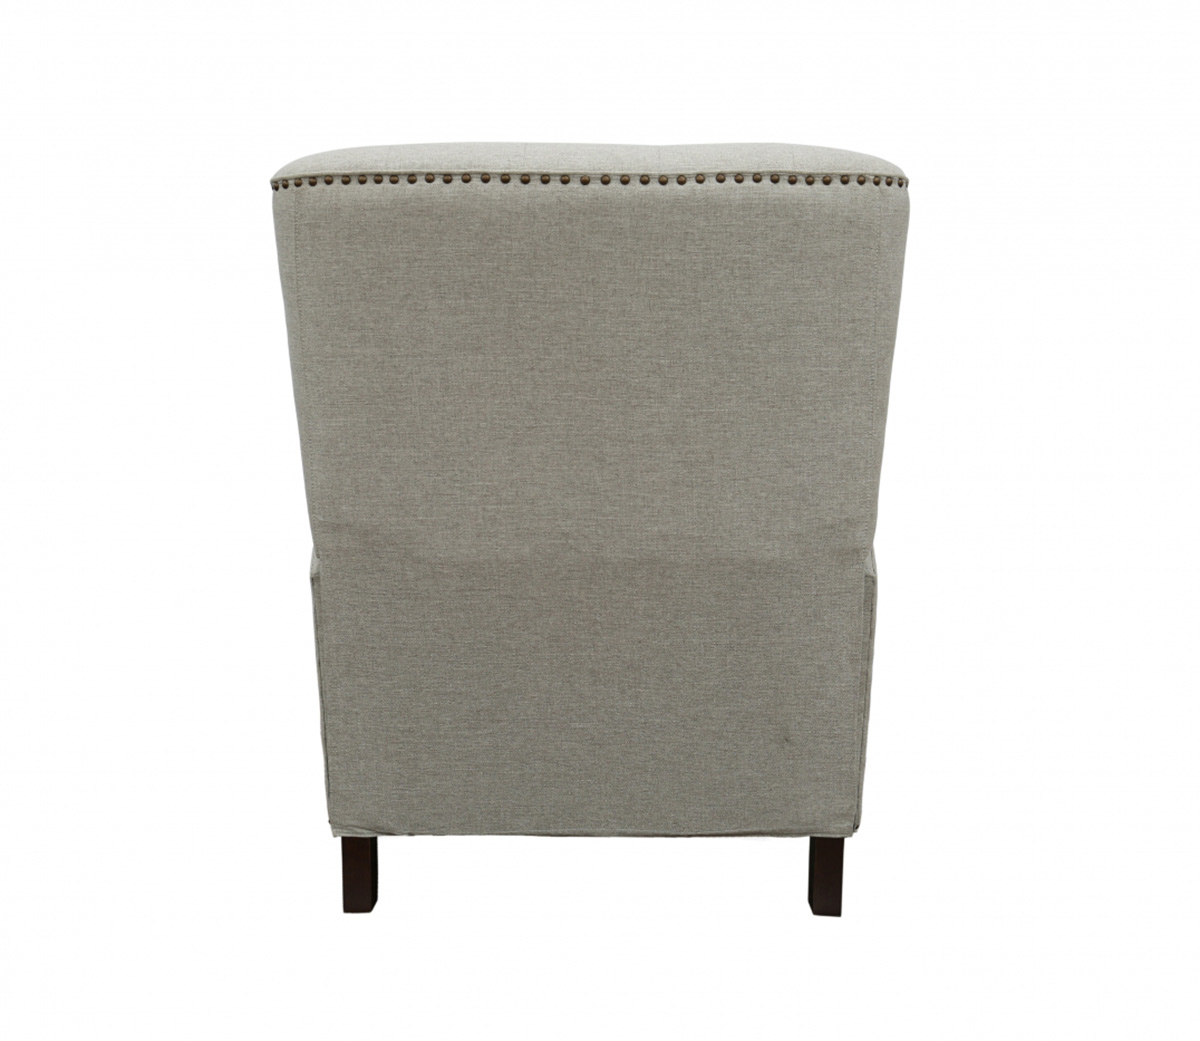 Barcalounger McHenry Power Recliner Chair - Linen/fabric